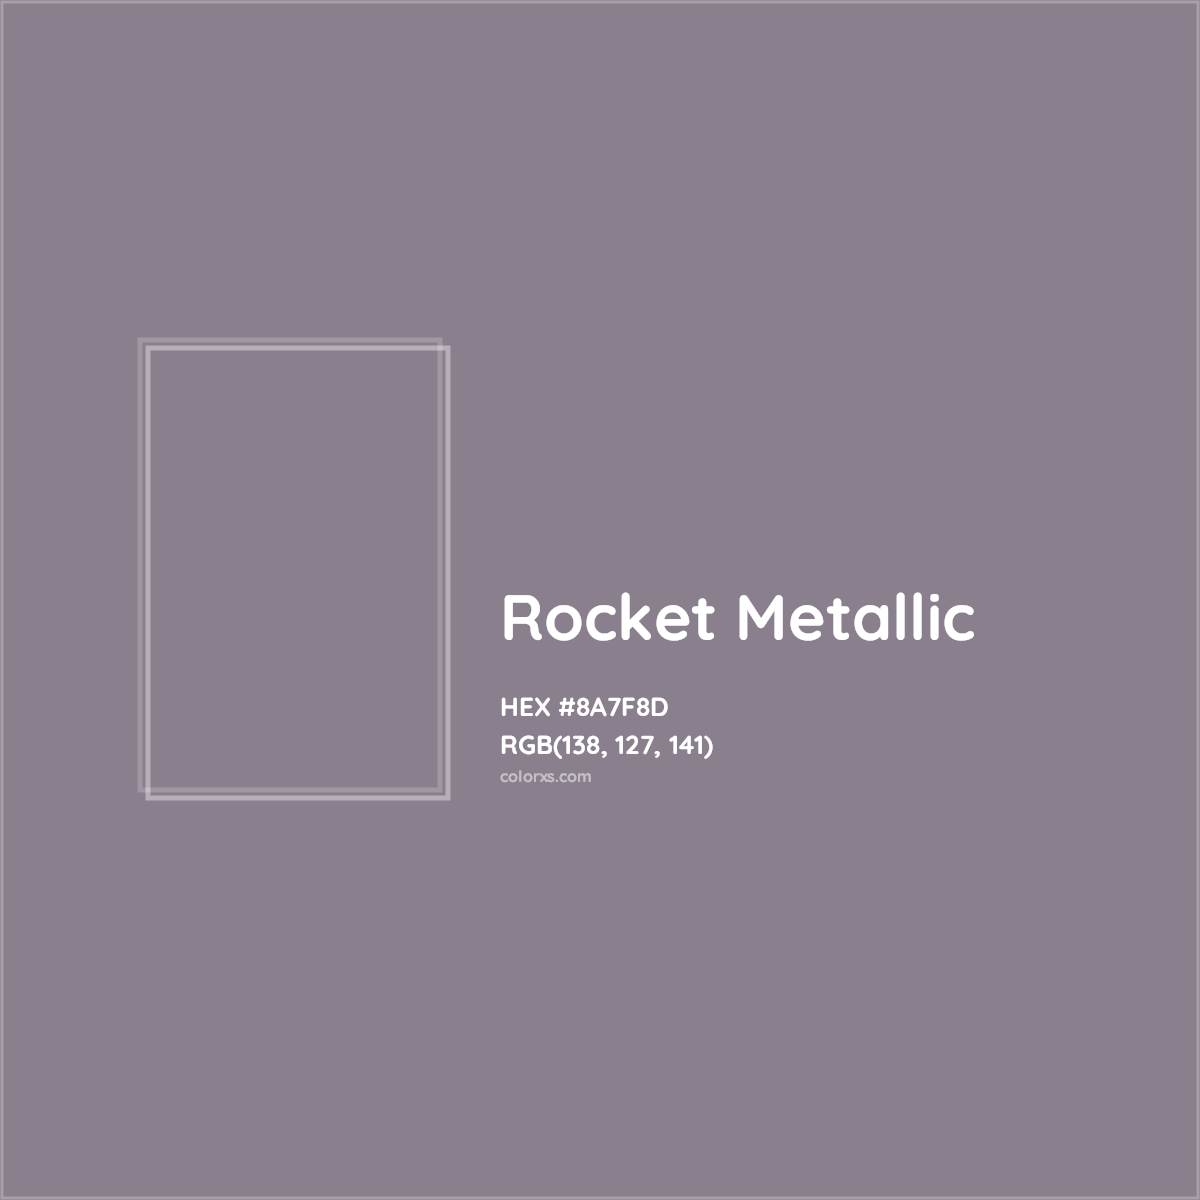 HEX #8A7F8D Rocket Metallic Color - Color Code